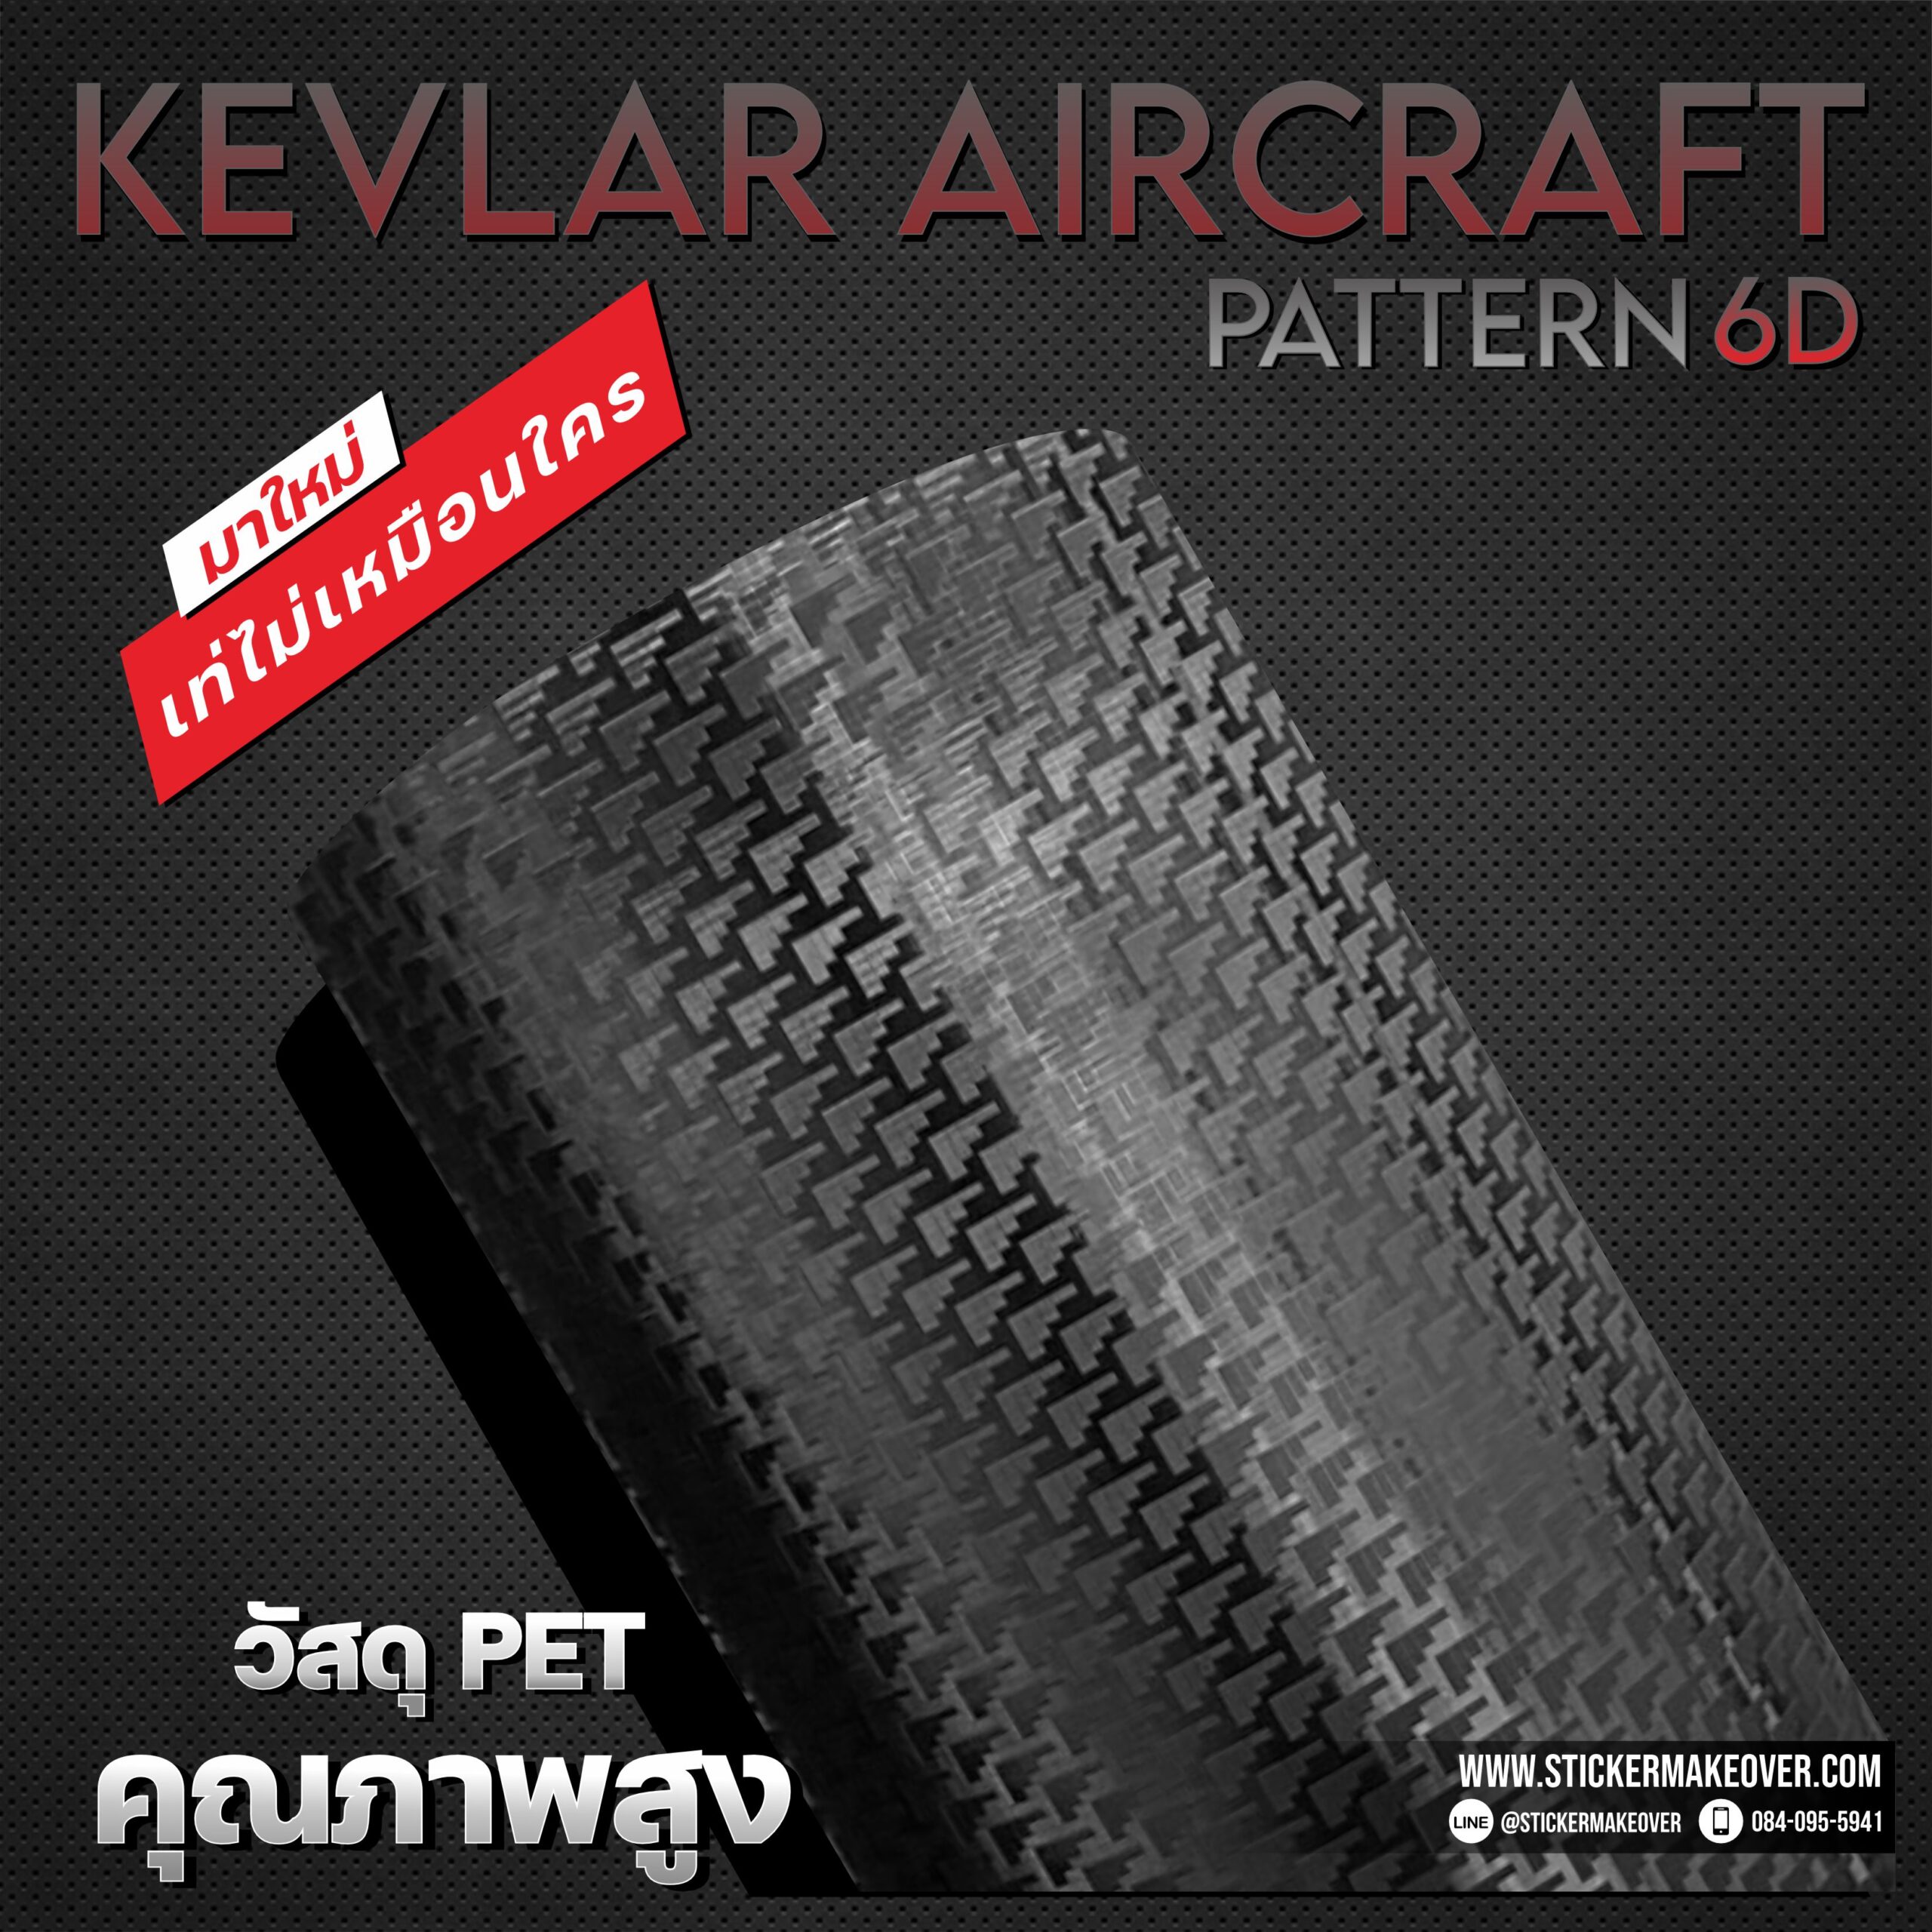 หุ้มสติกเกอร์เคฟลาร์ สติกเกอร์คาร์บอนเคฟลาร์ ลายรังผึ้ง carbon Kevlar ติดสติกเกอร์ฝากระโปรงเคฟลาร์ ฟอร์สคาร์บอน sticker kevlar aircraft pattern